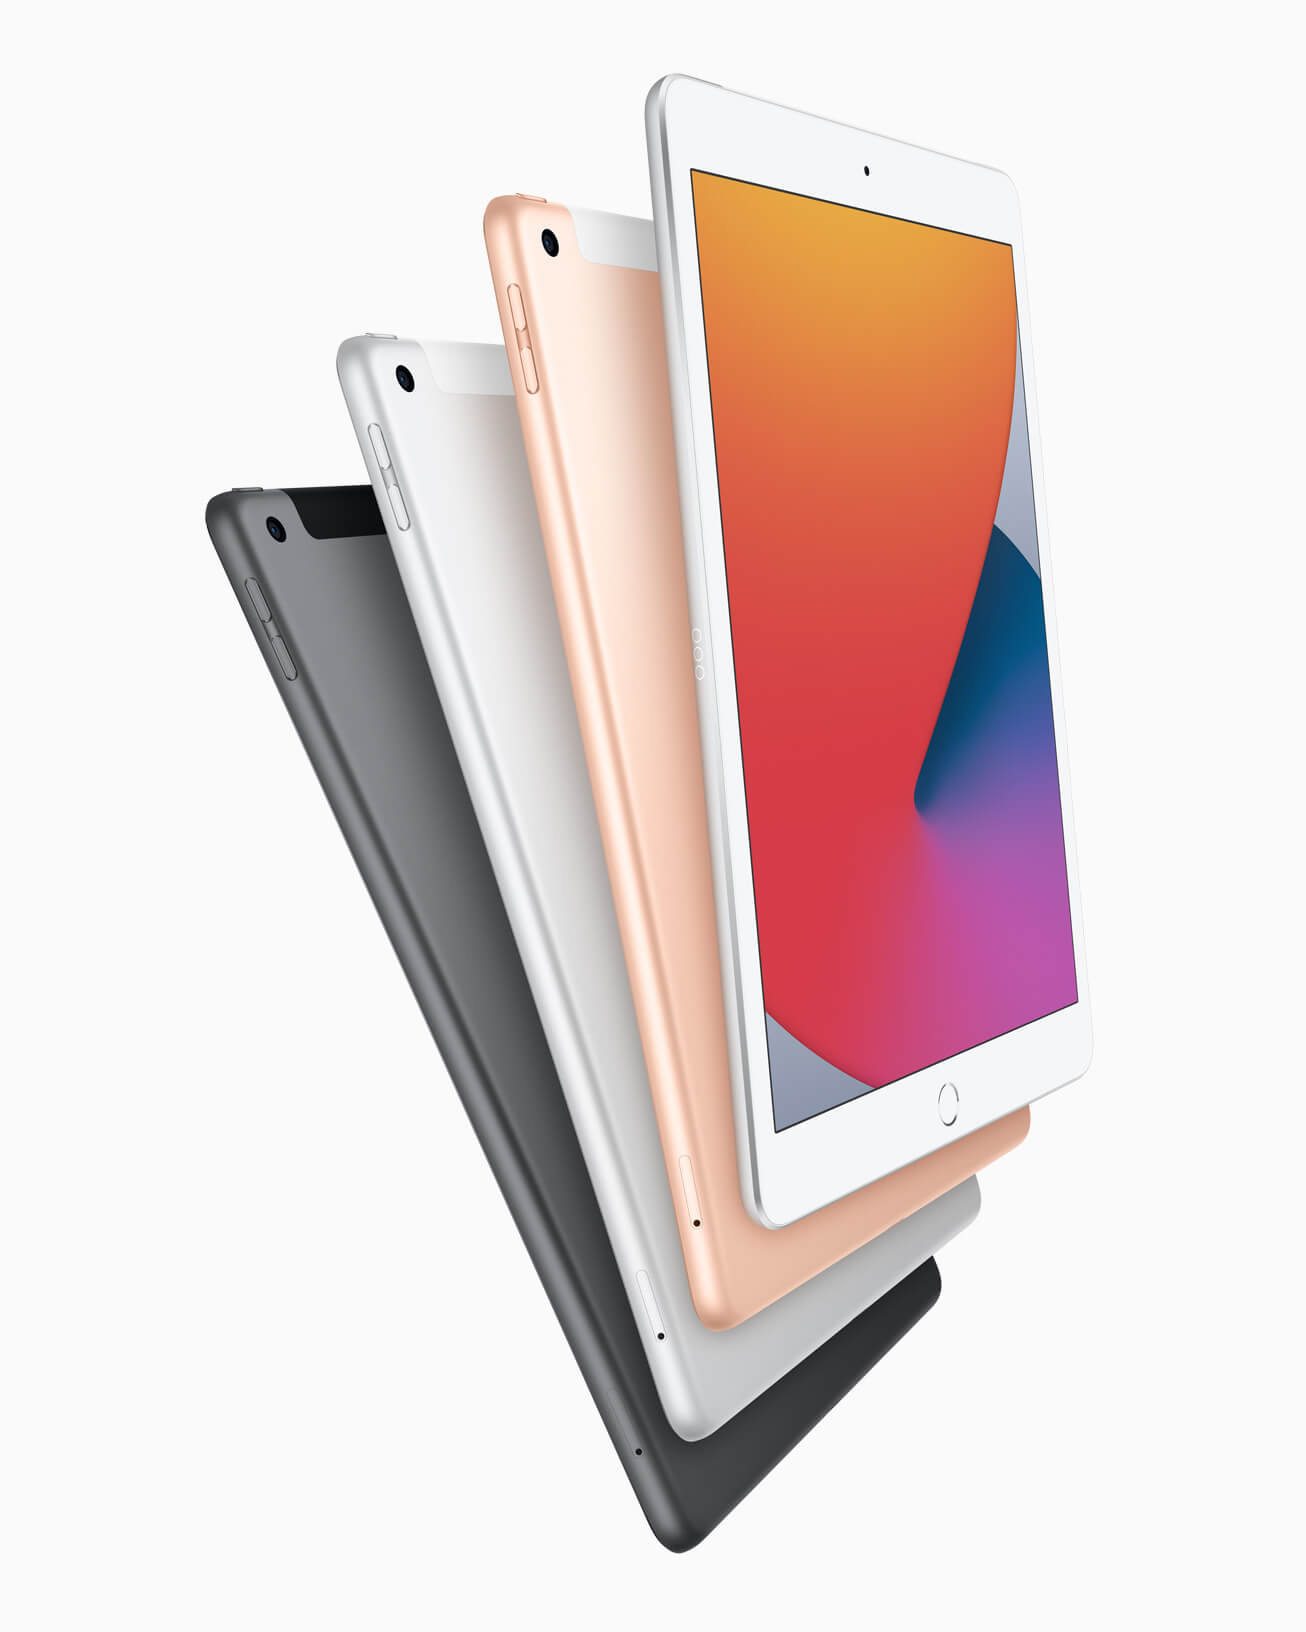 Harnas Missie mout iPad koopadvies: welke iPad kun je het best kopen in 2021?